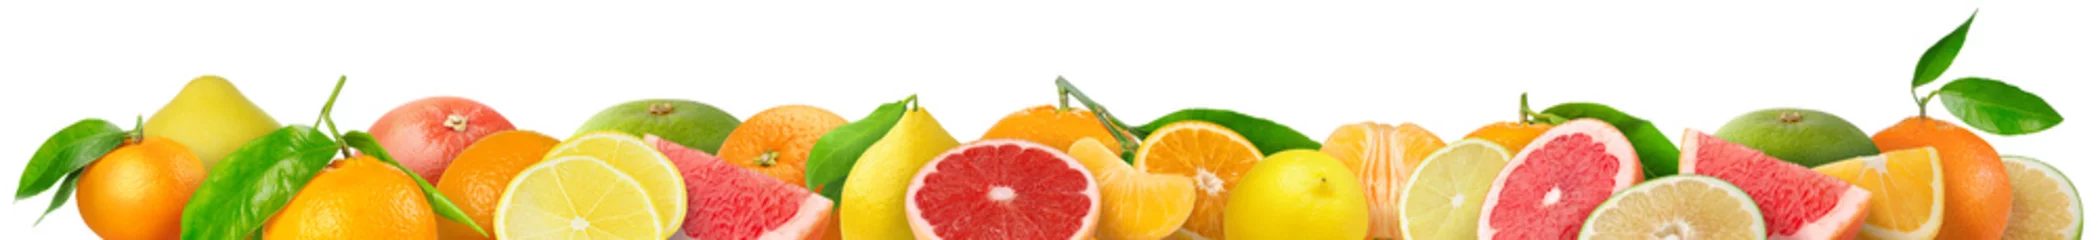 Poster Gemengde citrusvruchten grens. Stapel sinaasappel, citroen, mandarijn, grapefruit en andere citrusvruchten in horizontale samenstelling geïsoleerd op witte achtergrond © ChaoticDesignStudio